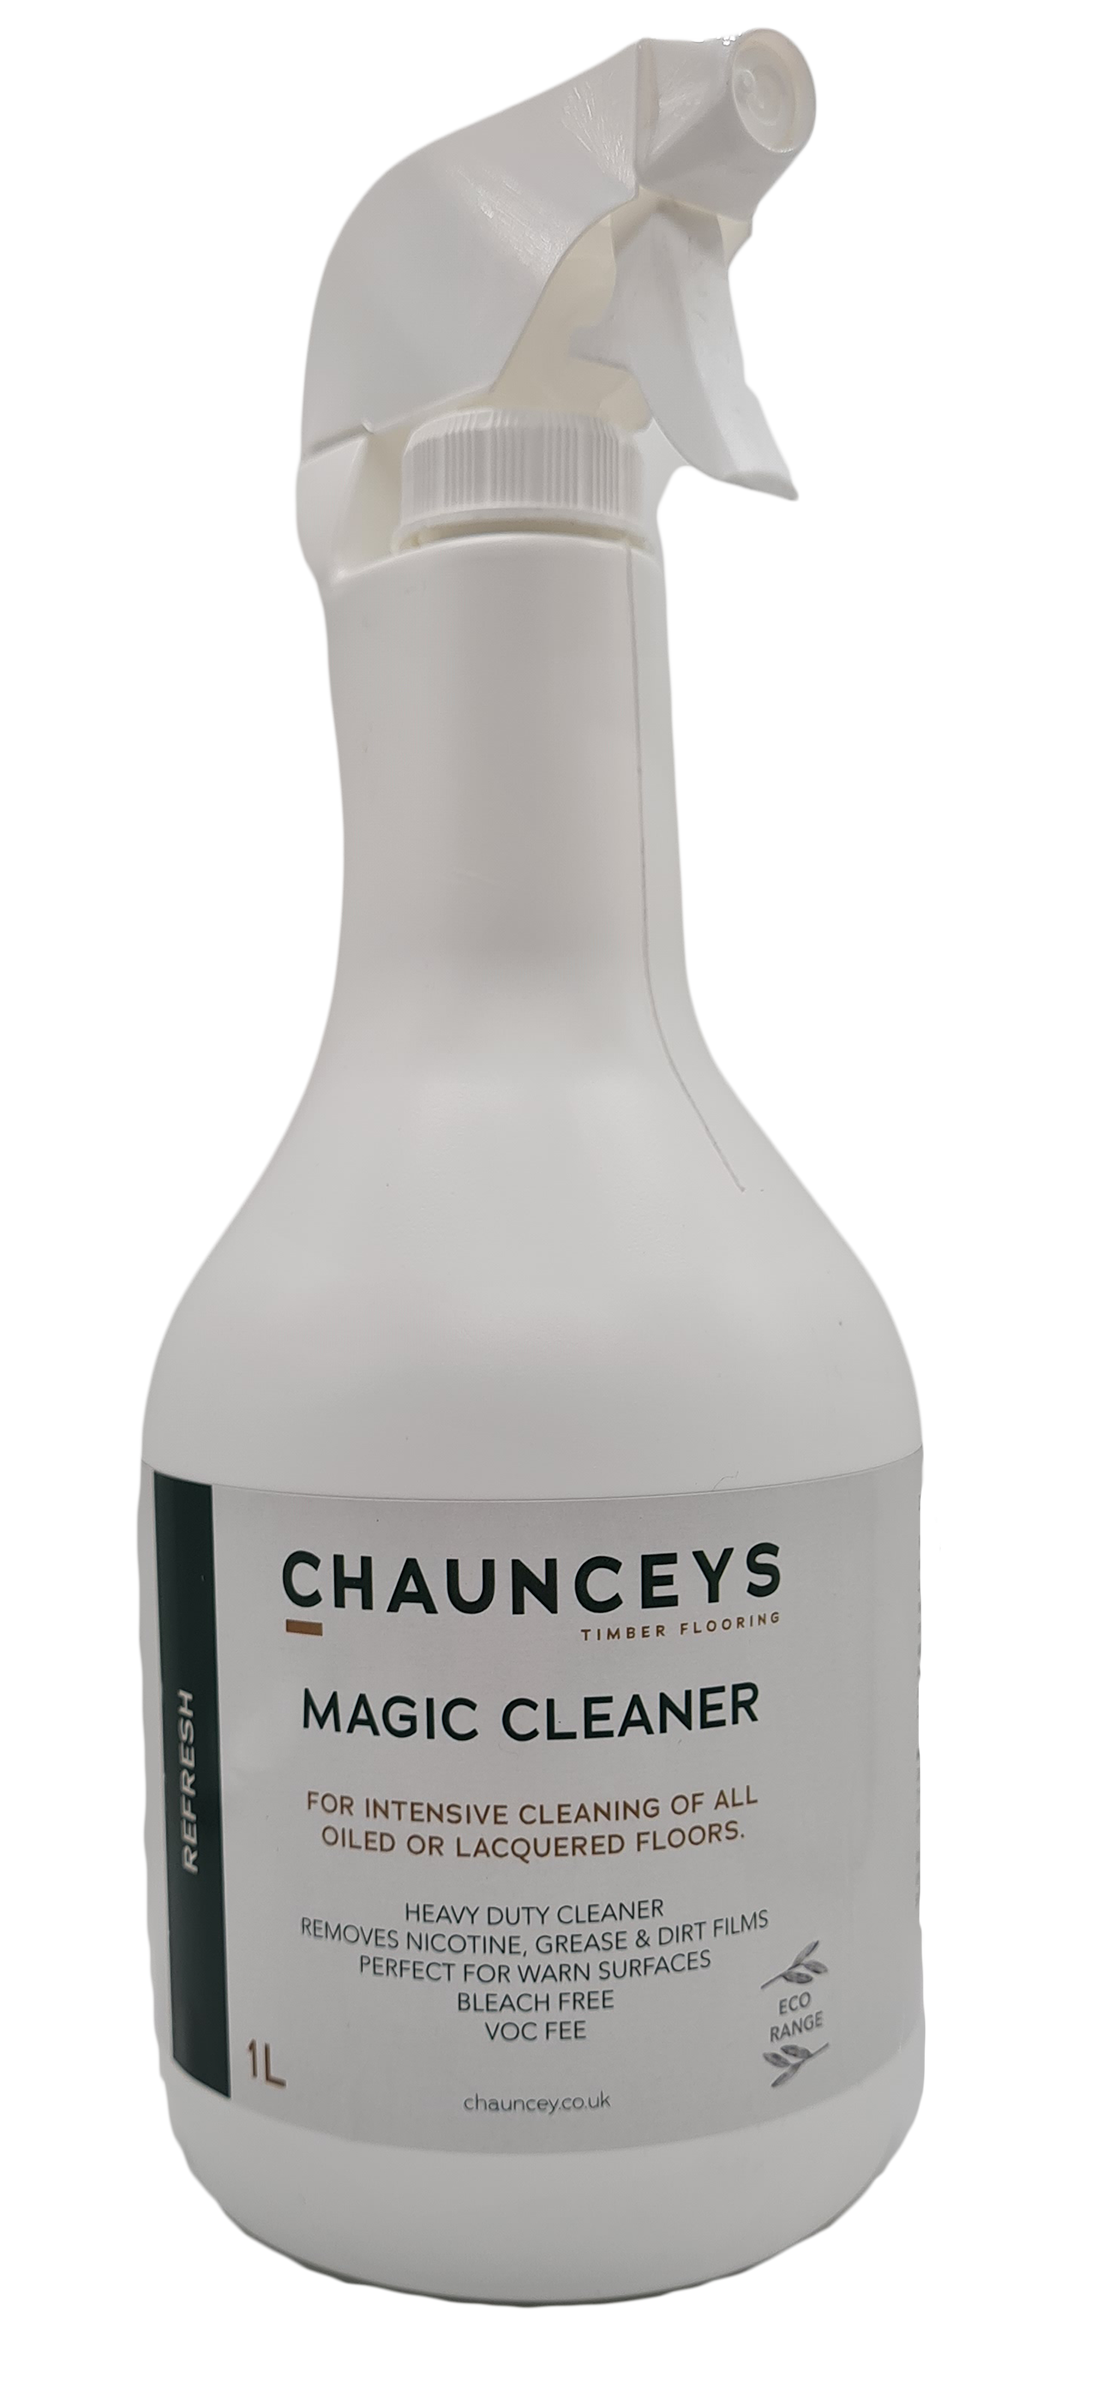 Magic cleaner bottle